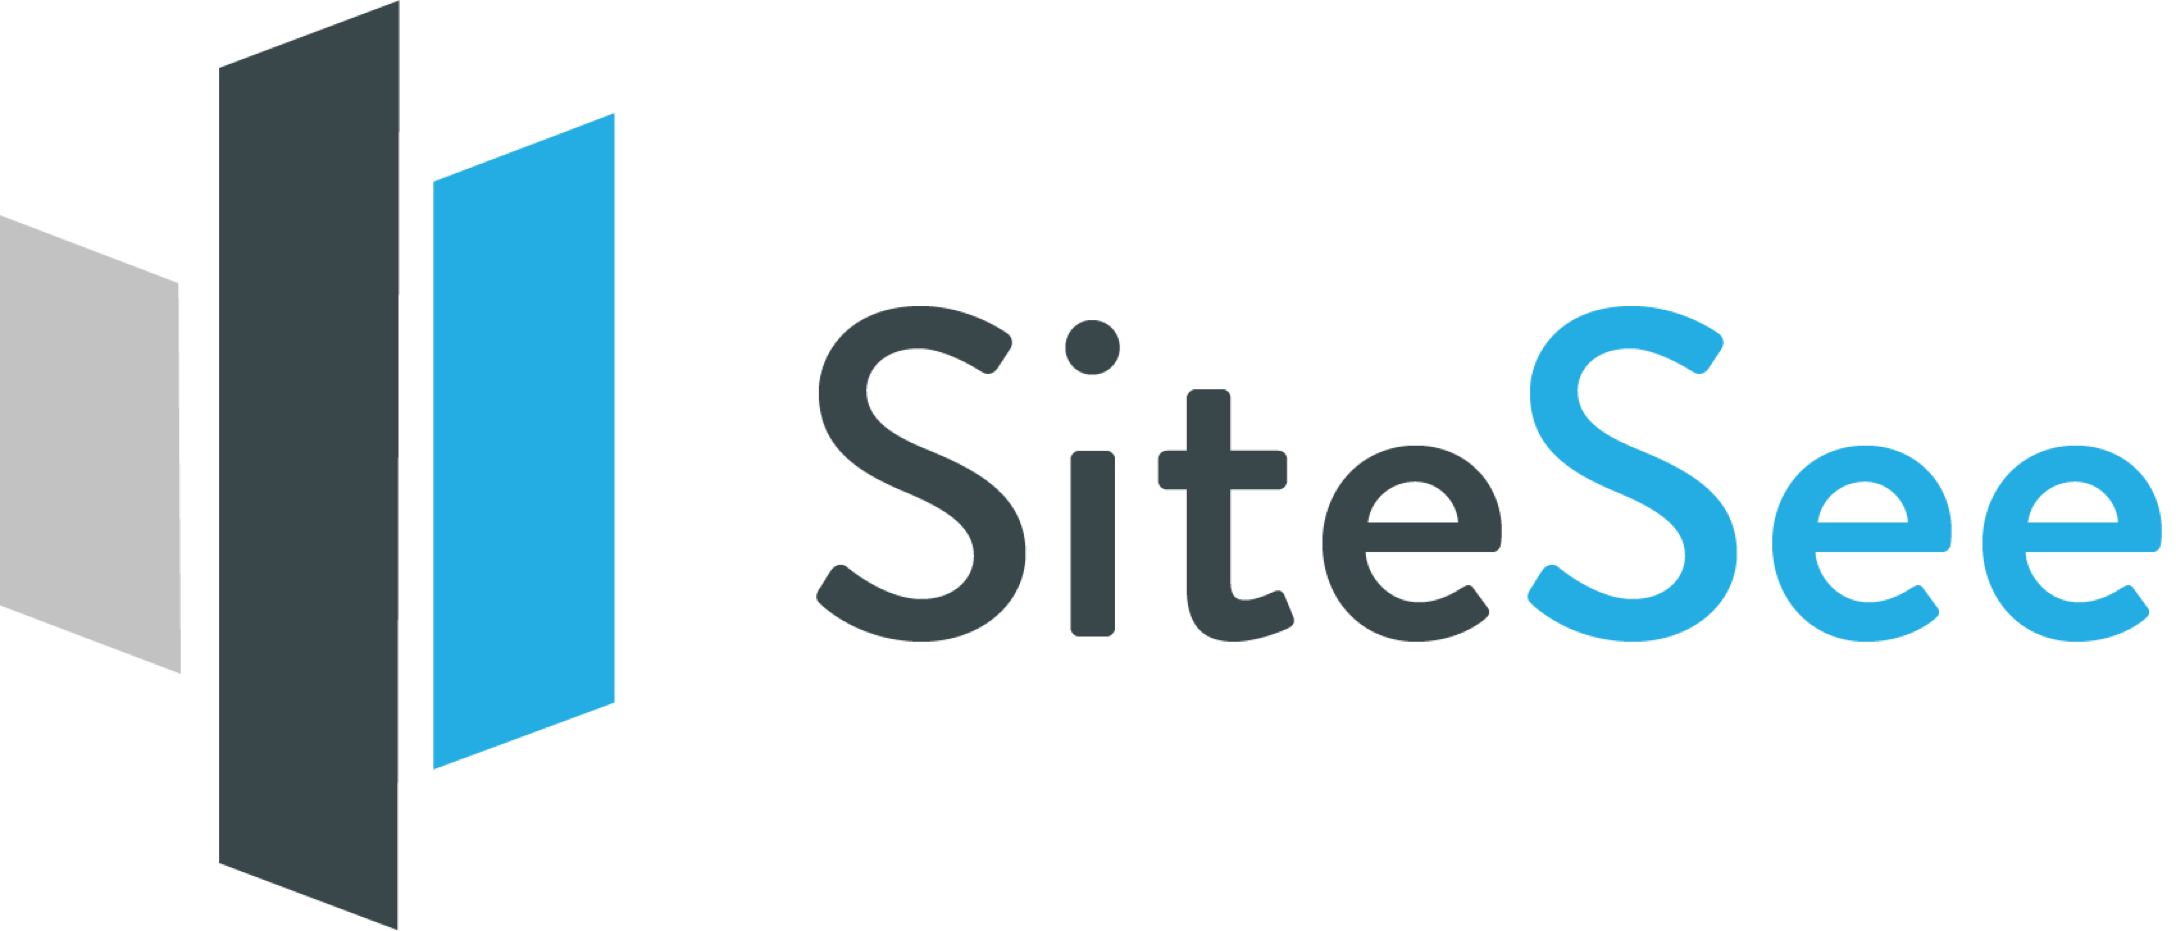 SiteSee Logo